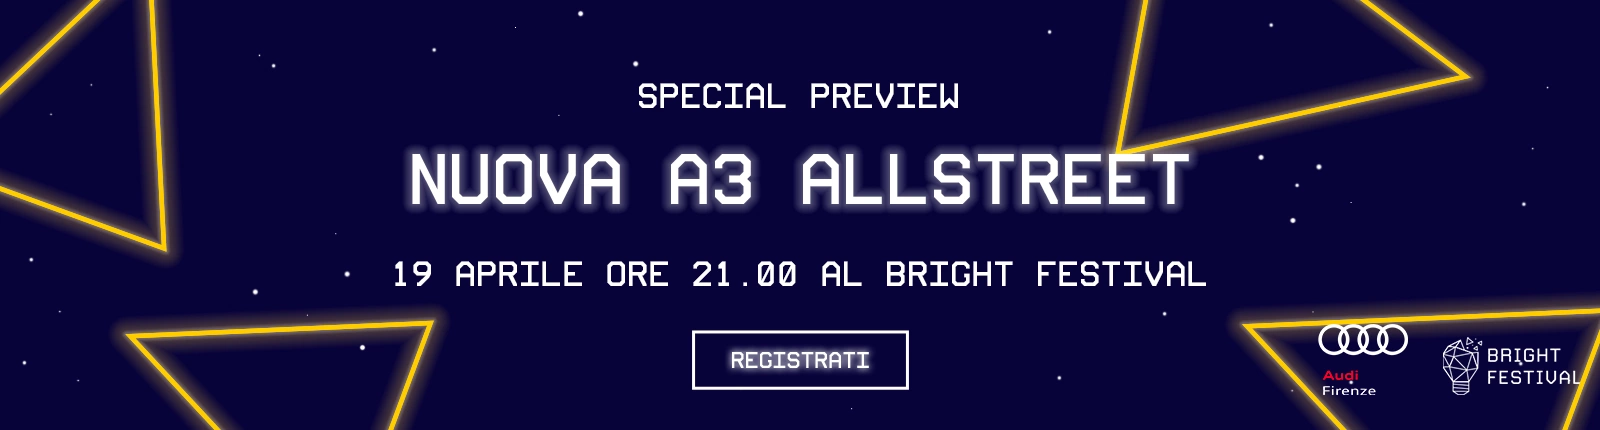 Lancio Audi A3 allstreet - Bright Festival